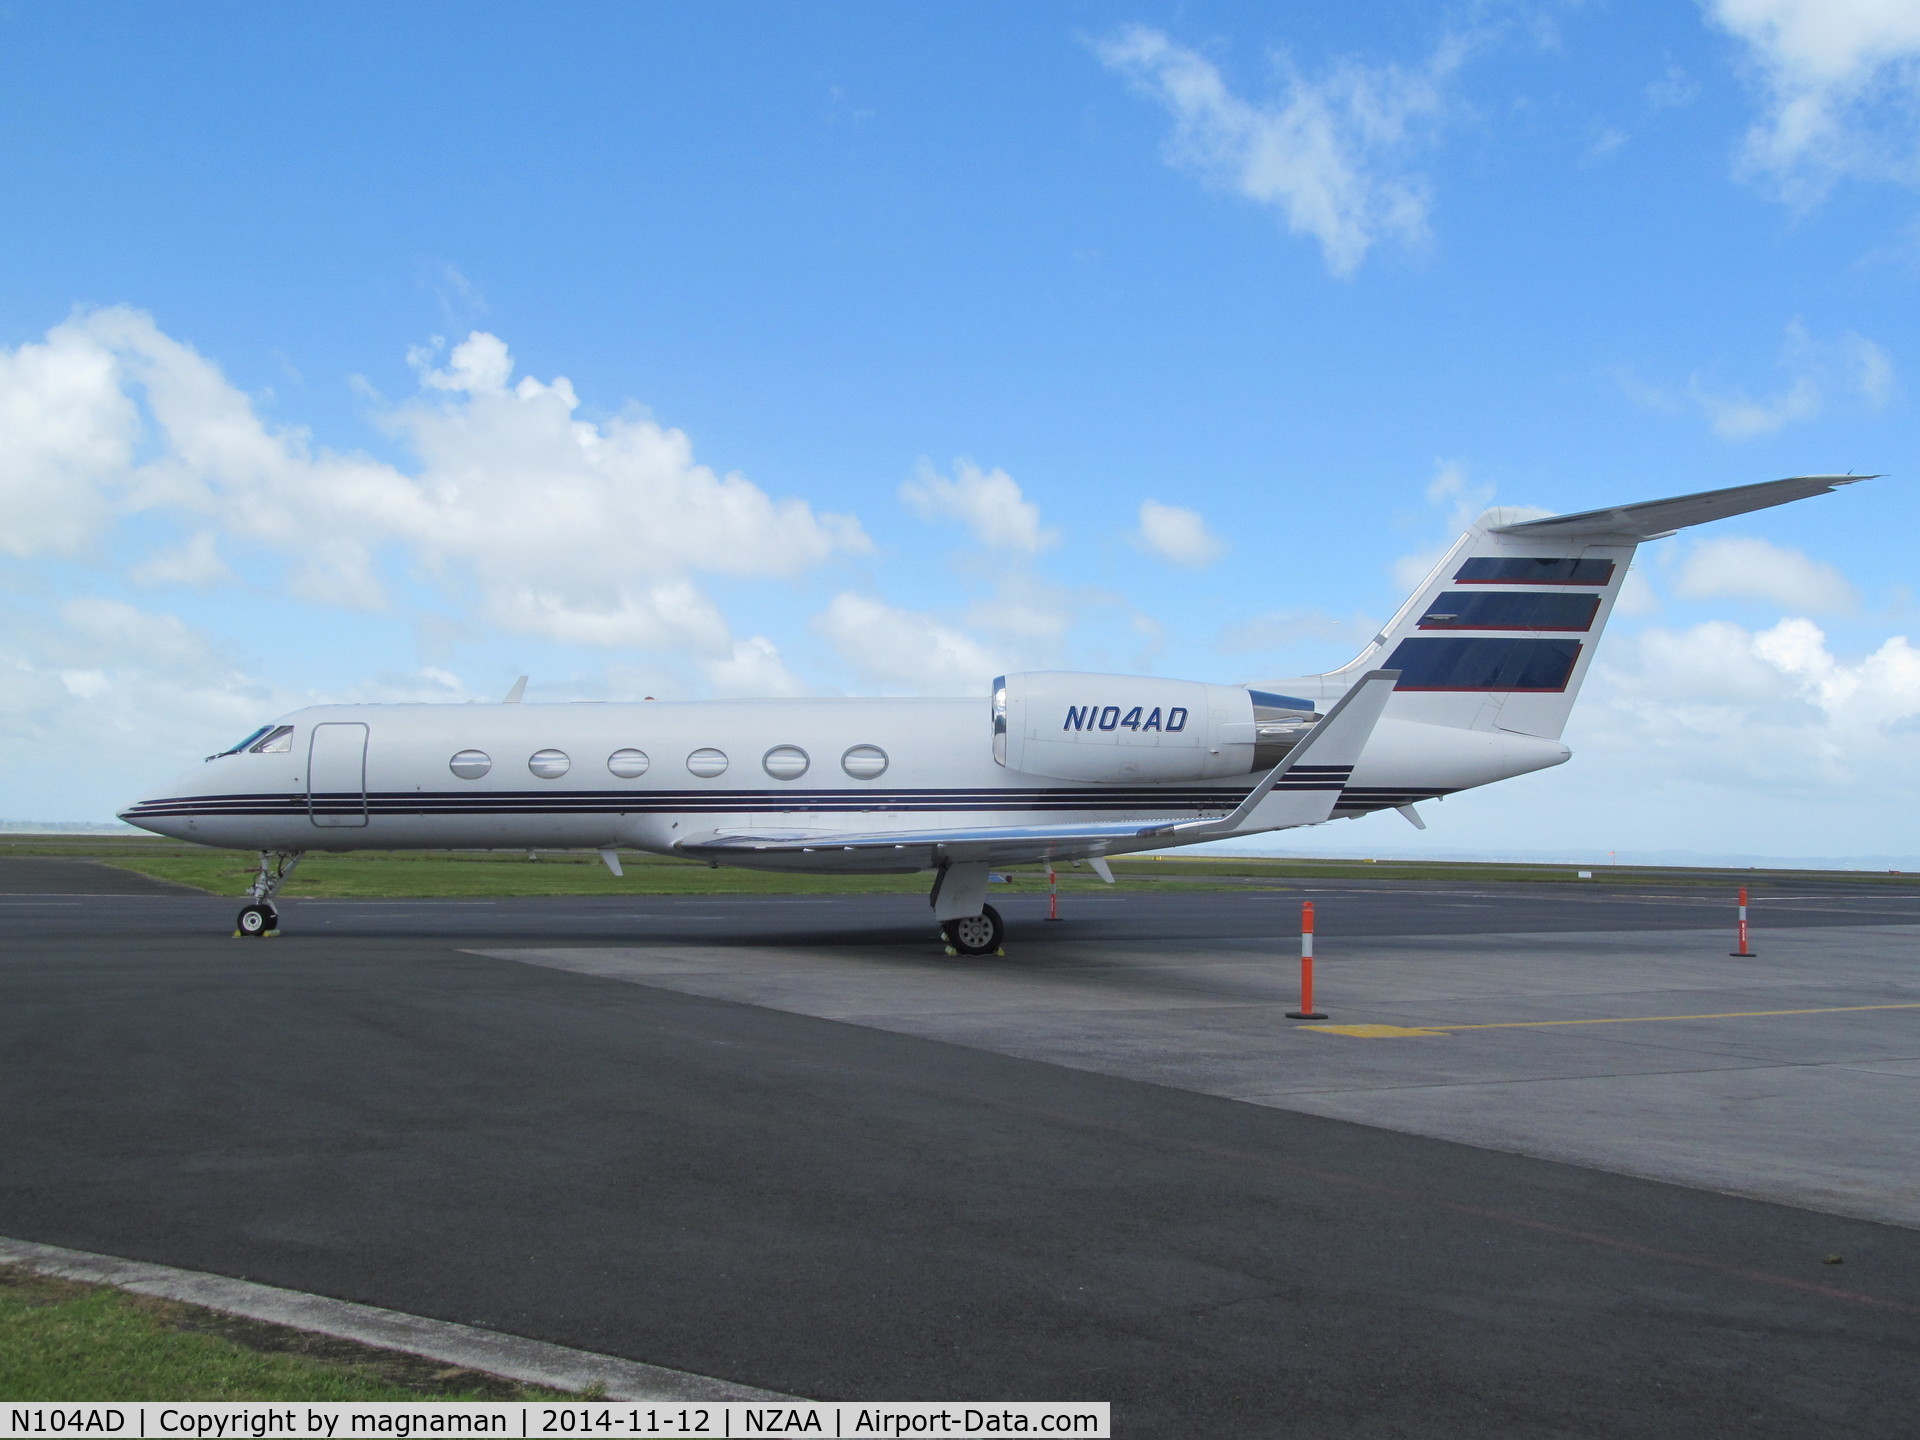 N104AD, 2000 Gulfstream Aerospace G-IV C/N 1406, bringing Mariah Carey to NZ for concert